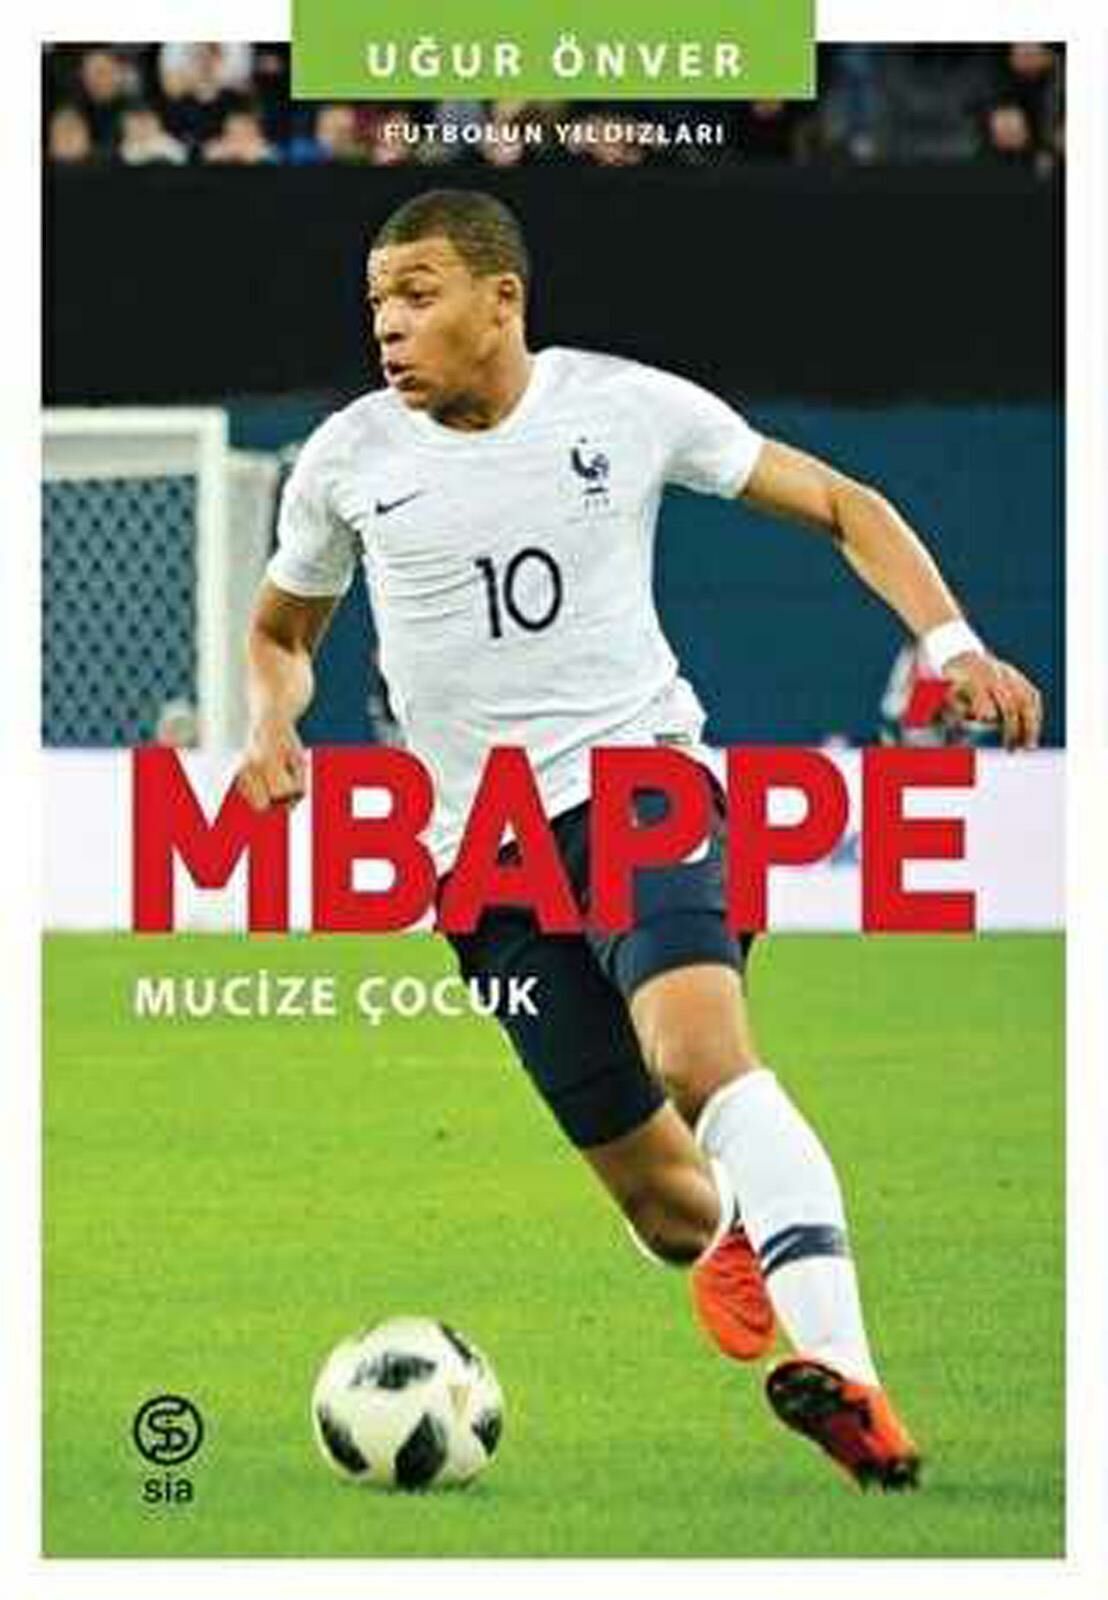 Mbappe Mucize Çocuk Futbolun Yıldızları Uğur Önver